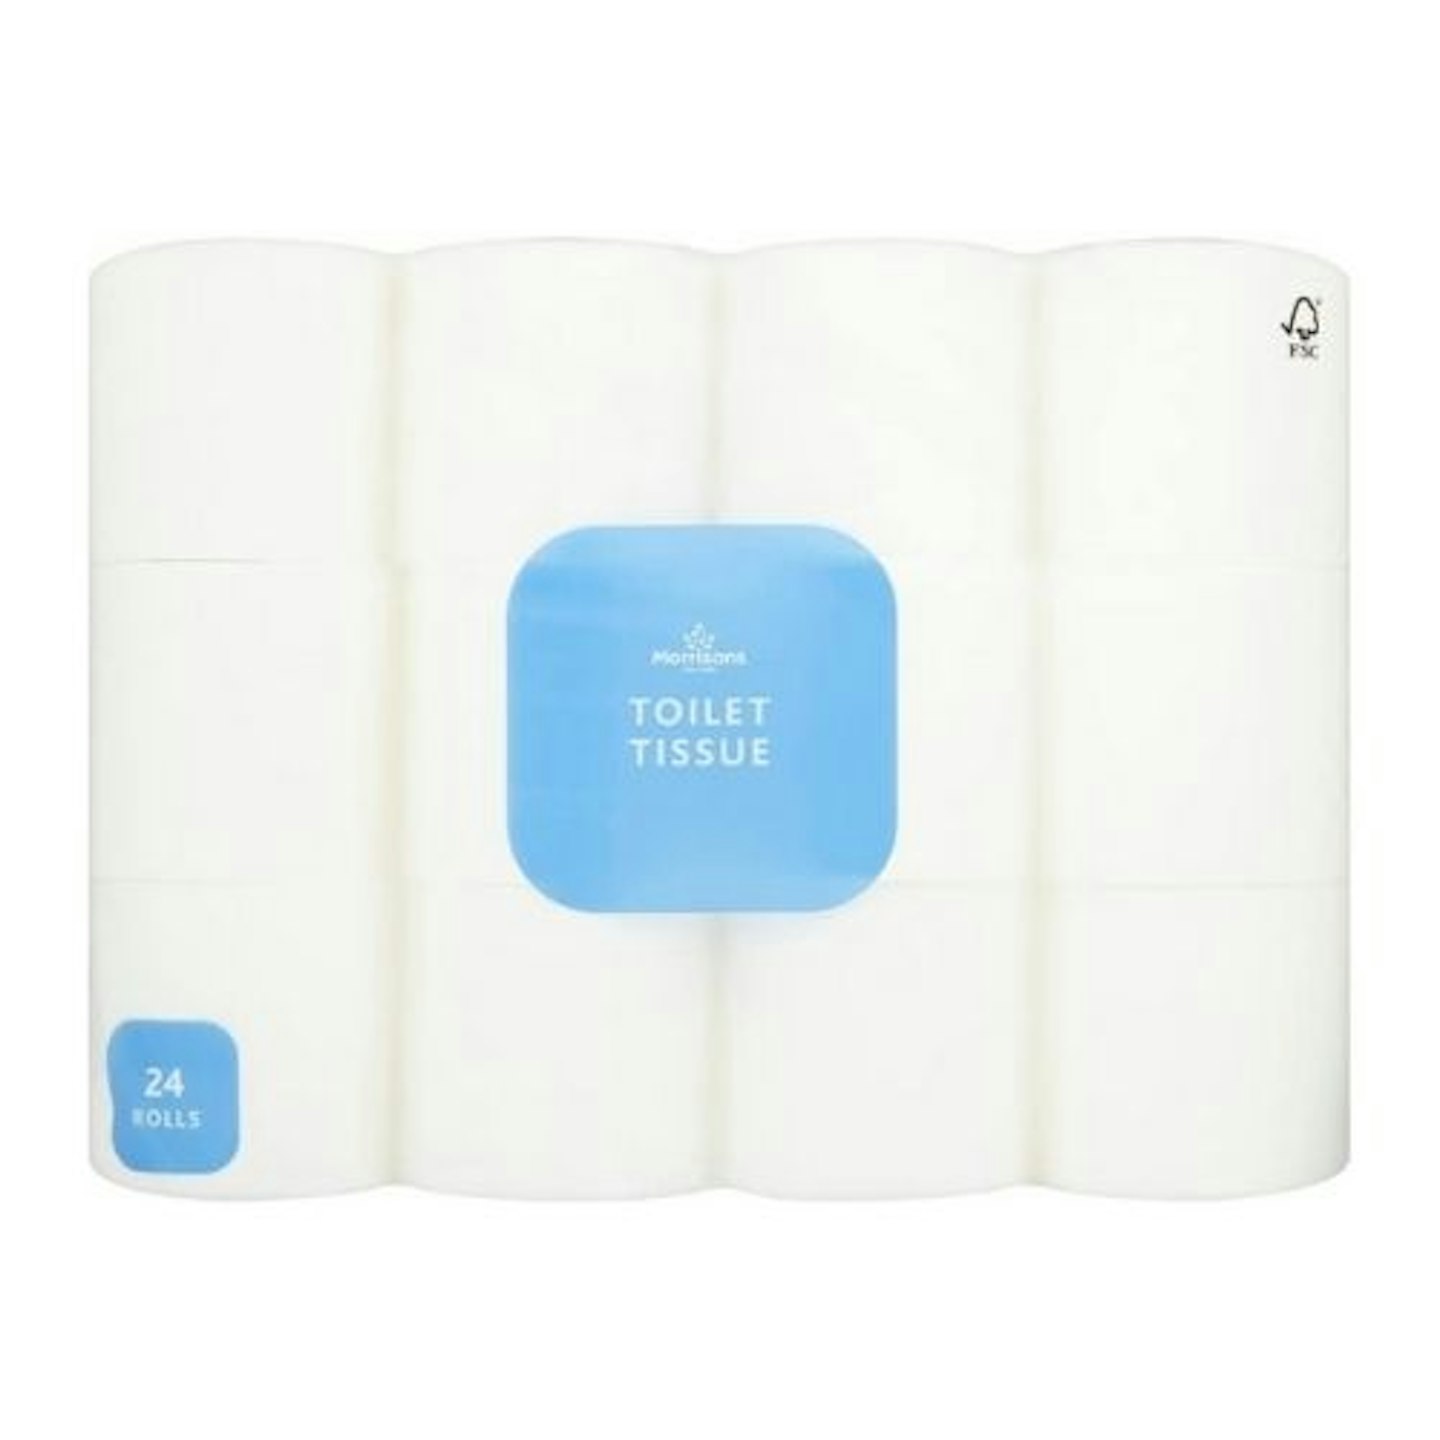 Morrisons 24 Toilet Tissue Rolls